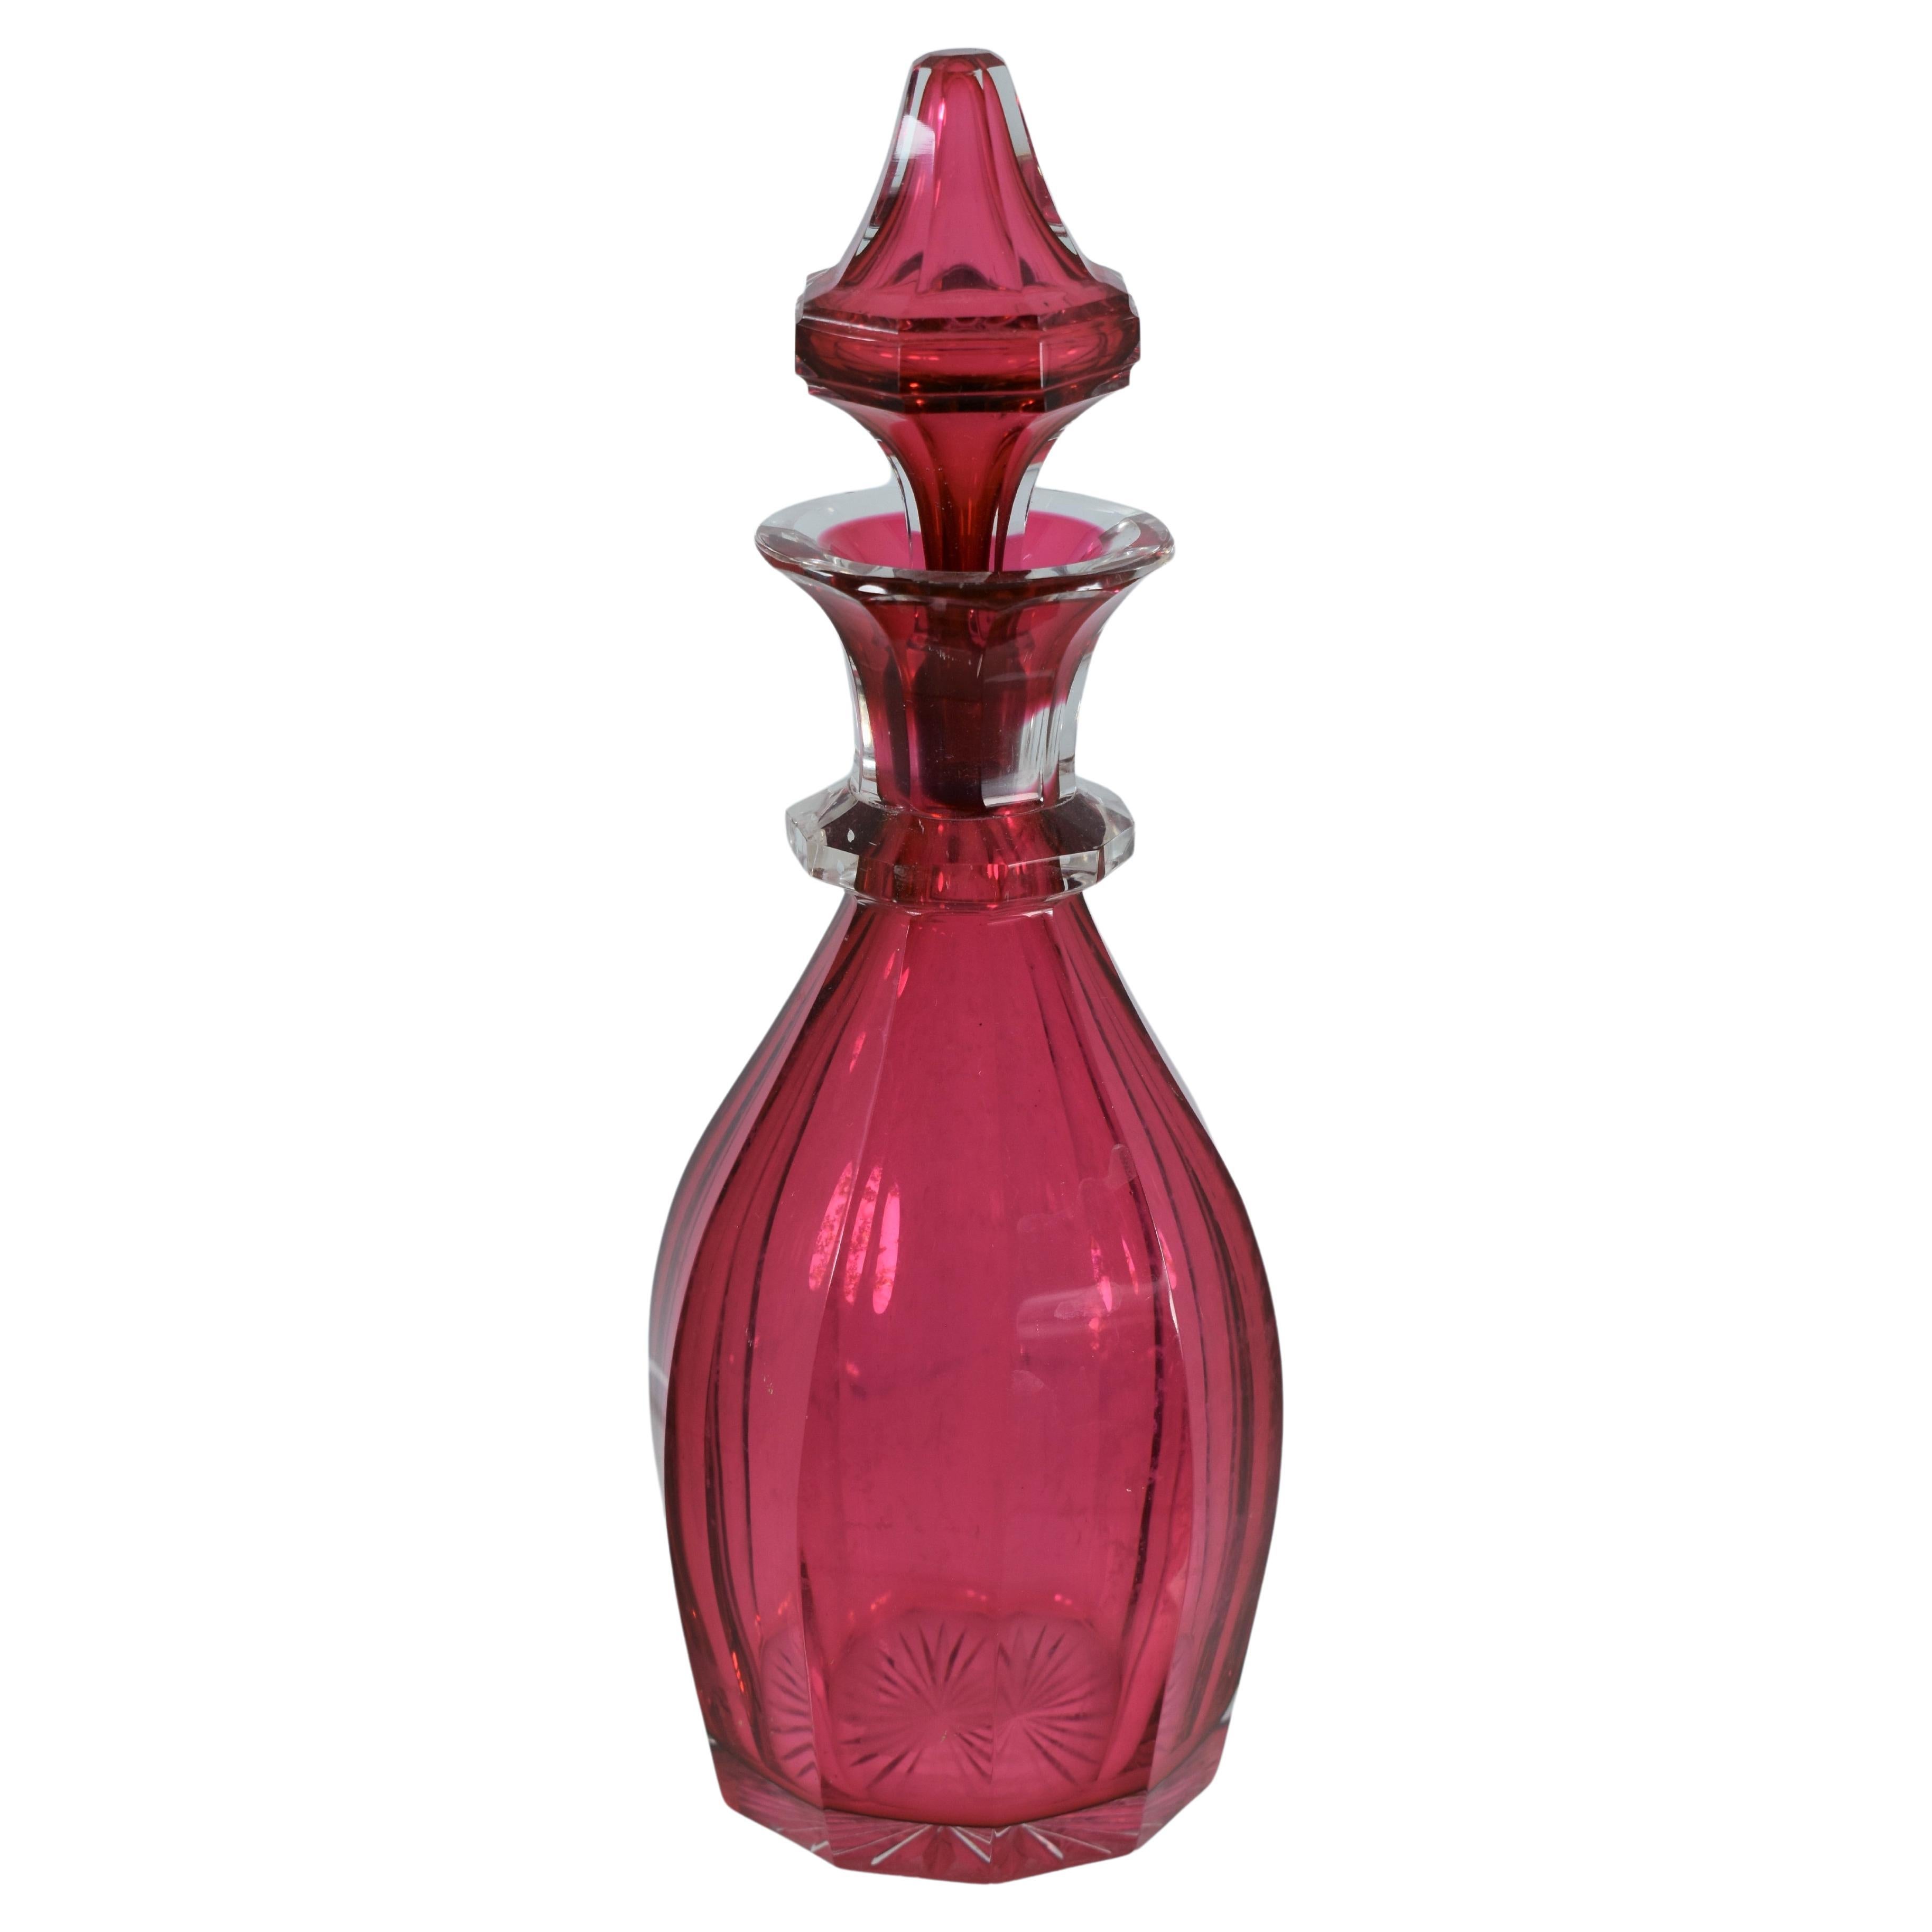 Parfümflasche aus Preiselbeerglas.
Bohemia, 19. Jahrhundert.
Maße: 21 cm hoch.
 